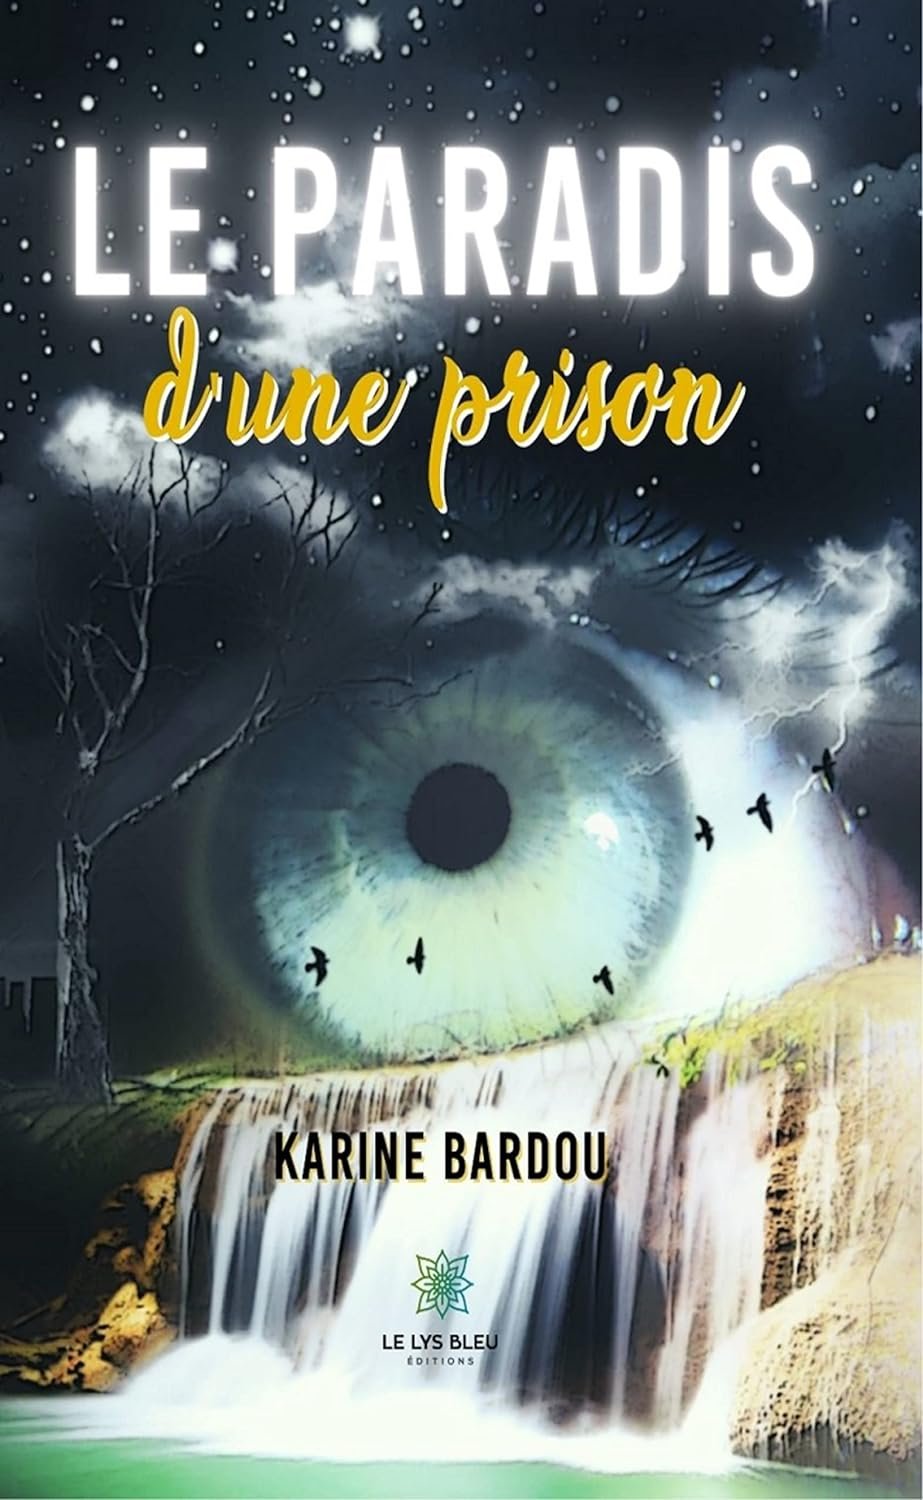 Karine Bardou - Le paradis d'une prison